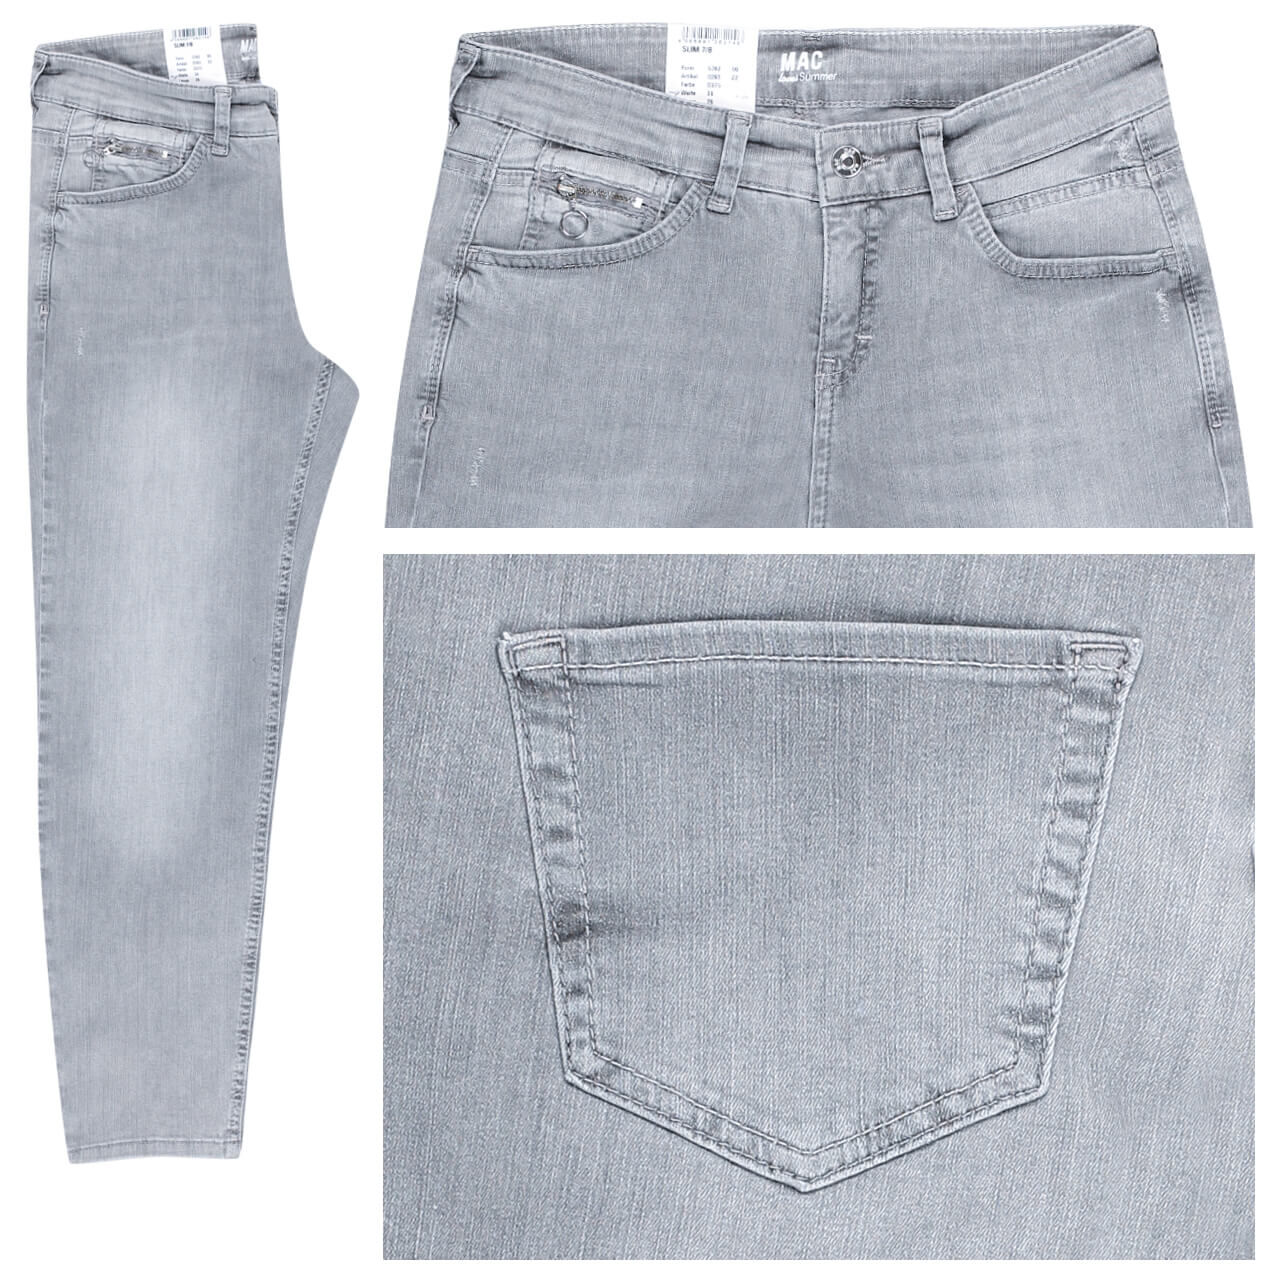 MAC Jeans Slim 7/8 für Damen in Hellgrau angewaschen, FarbNr.: D375